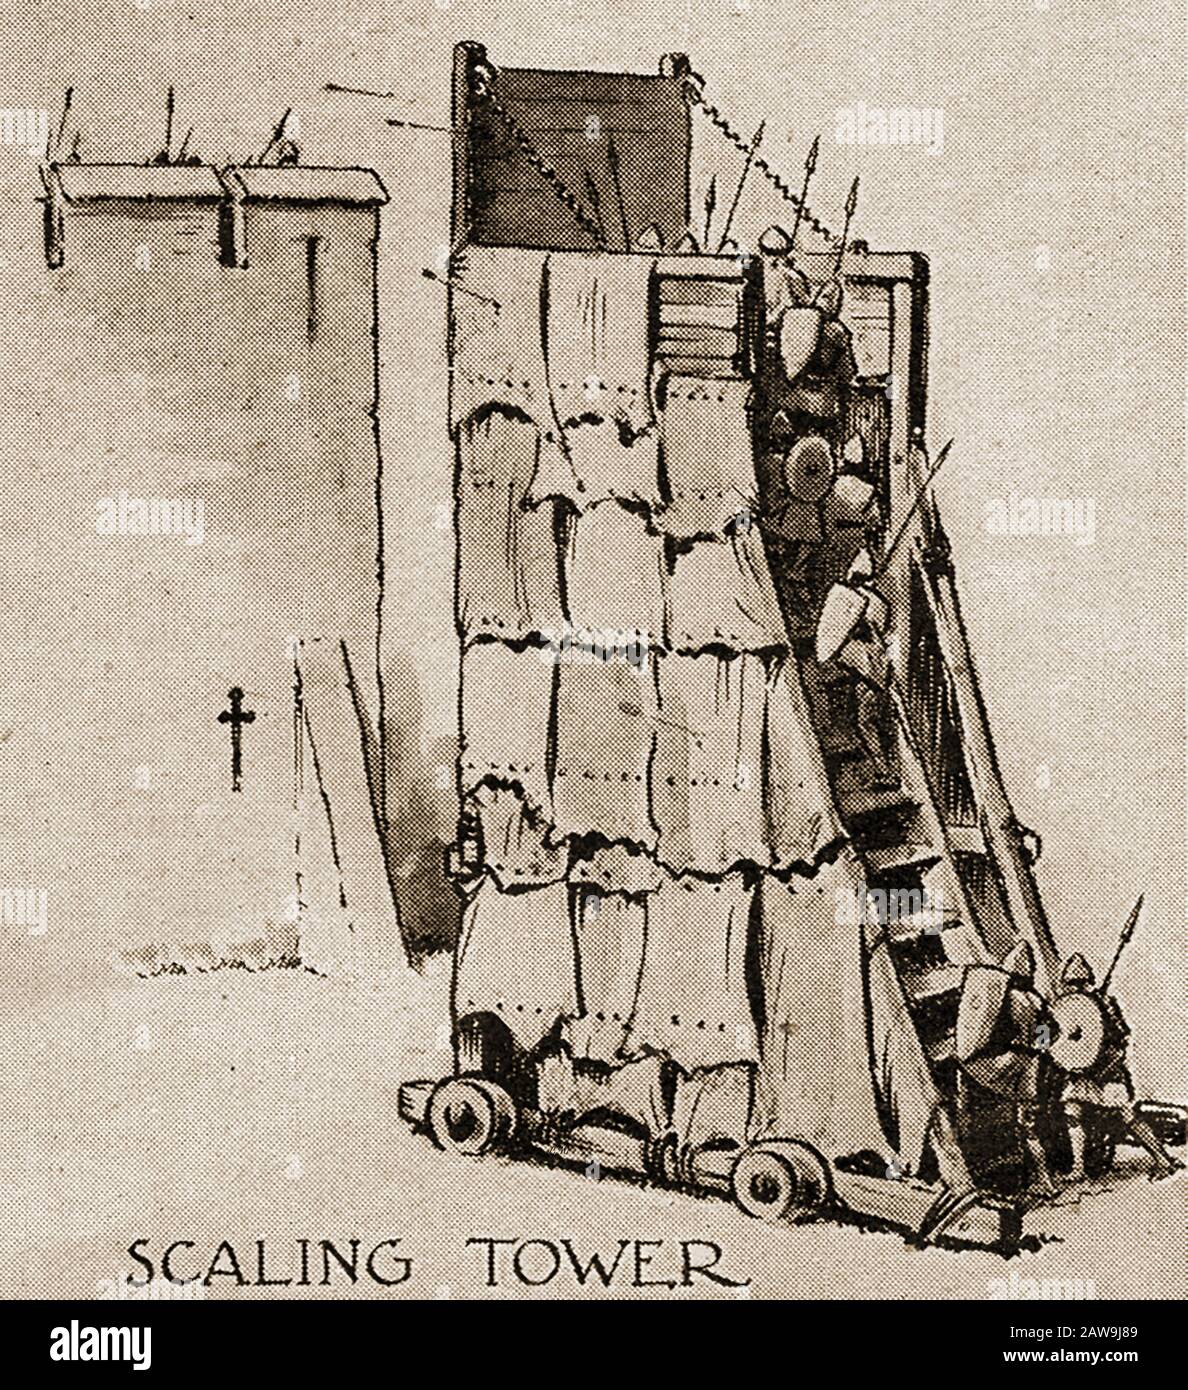 Un'illustrazione degli anni '40 che mostra le armi storiche di battaglia - Scaling Tower. Utilizzato per scalare pareti e torri Foto Stock